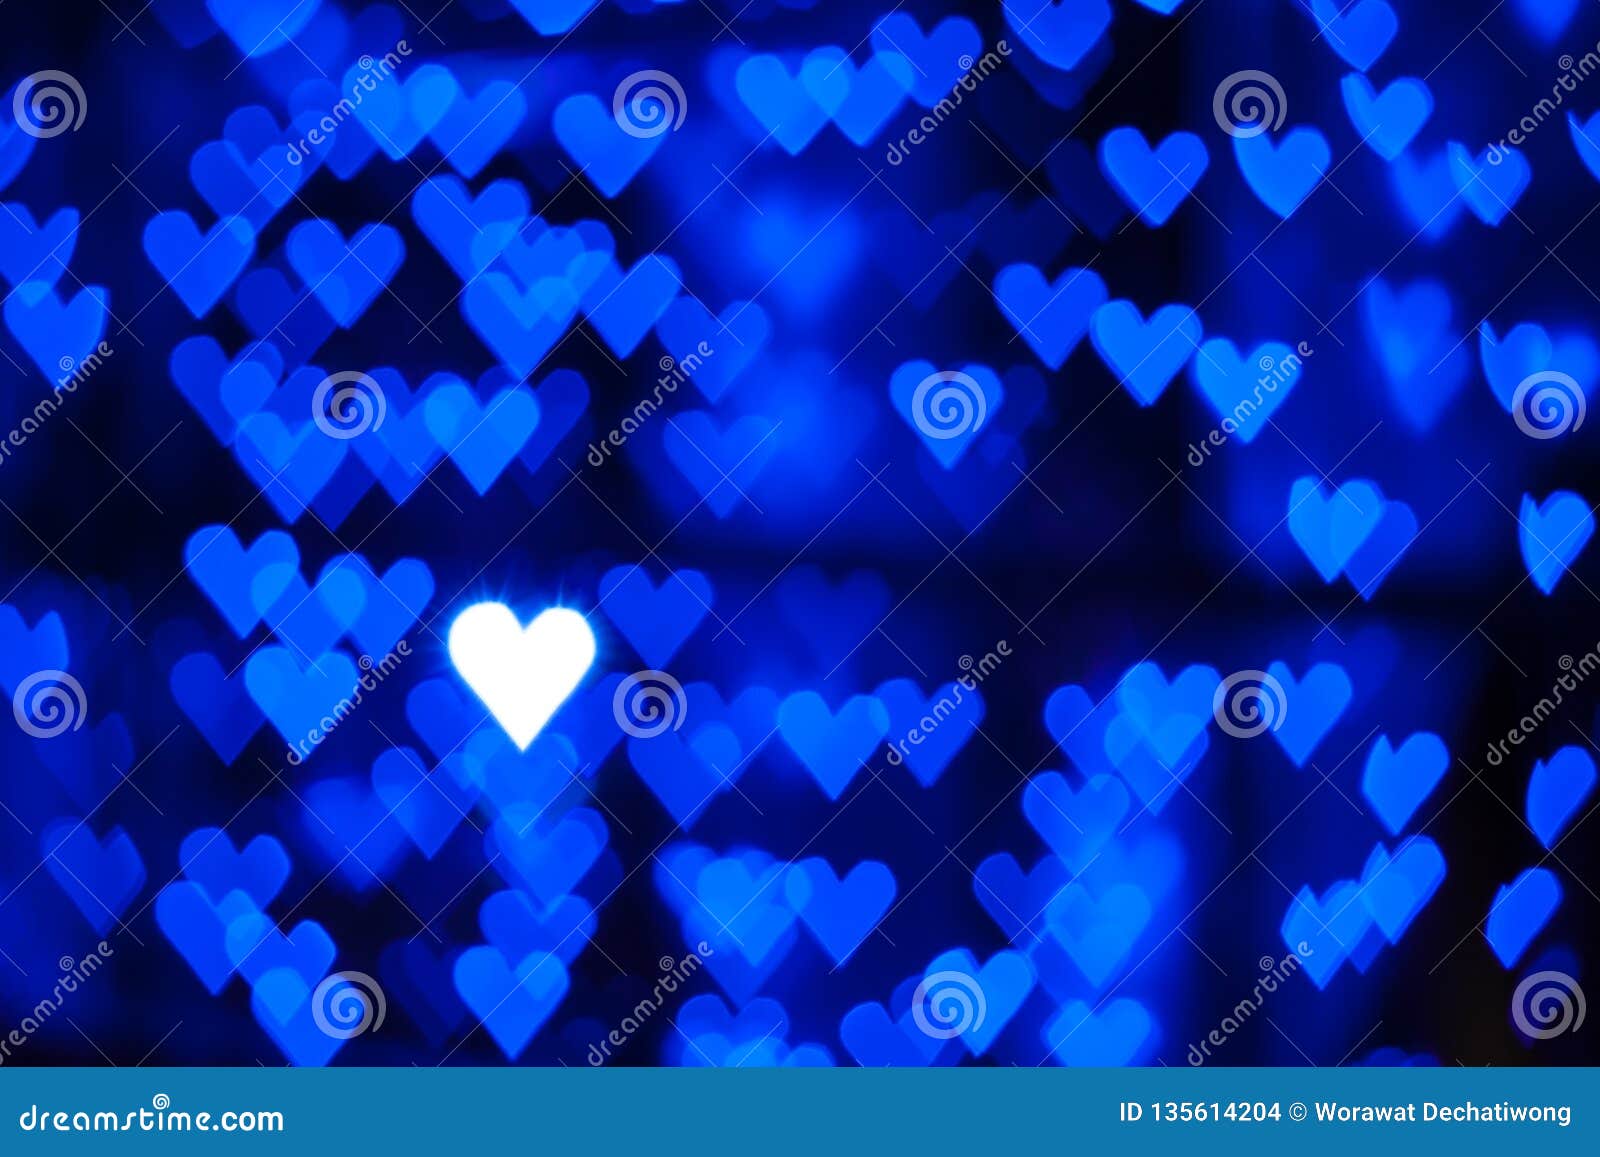 Download Repetitive Blue Hearts Wallpaper  Wallpaperscom